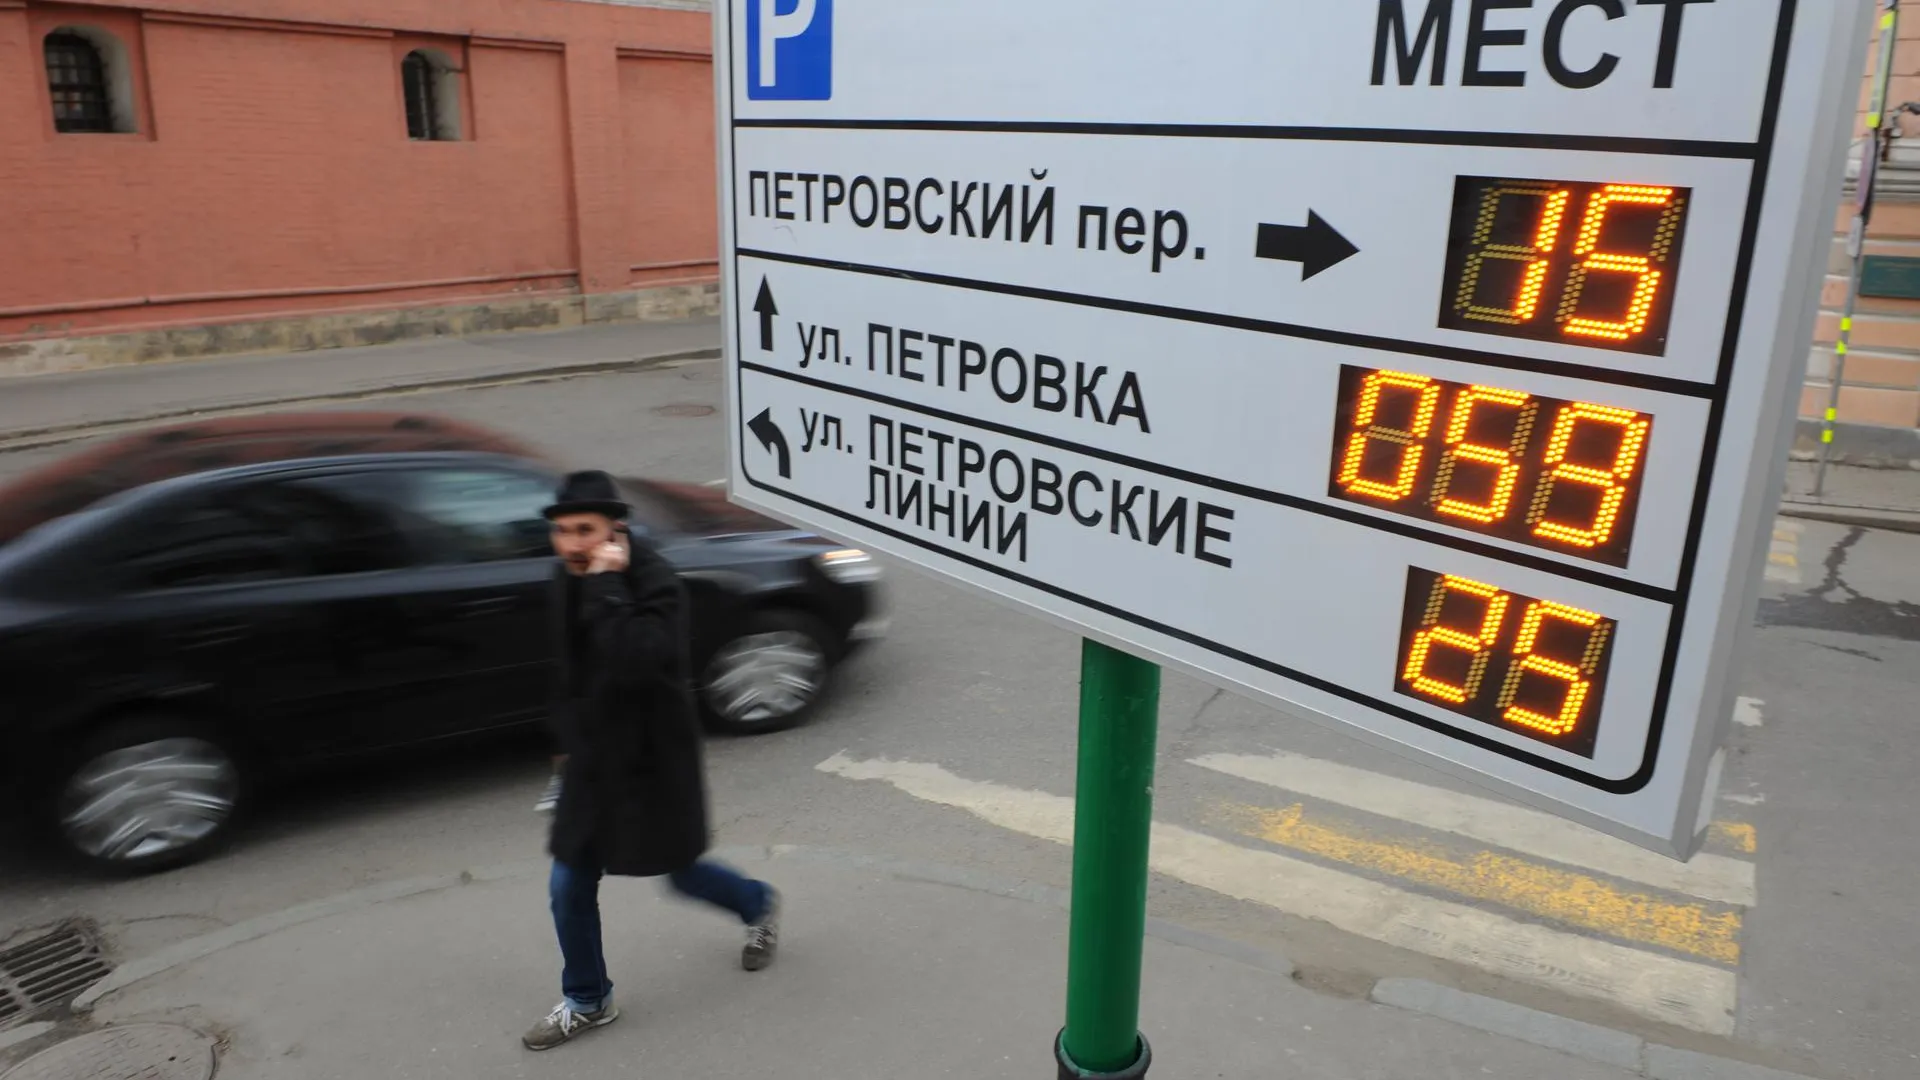 Личное мнение: платные парковки в Москве будут расширяться в любом случае